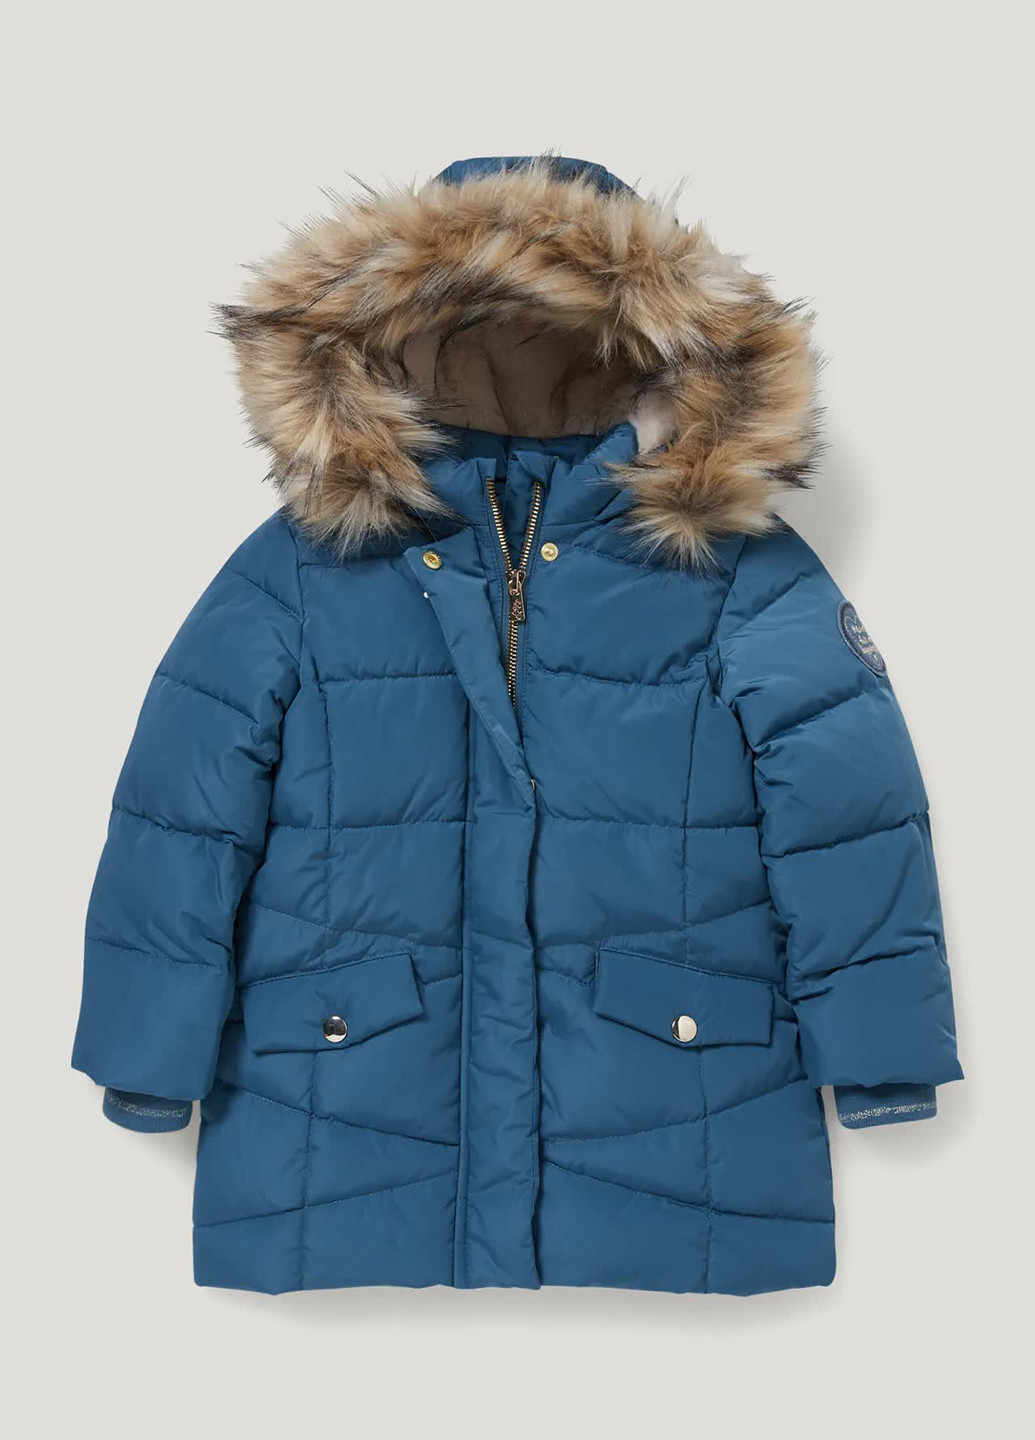 Синяя зимняя стеганая утепленная куртка C&A